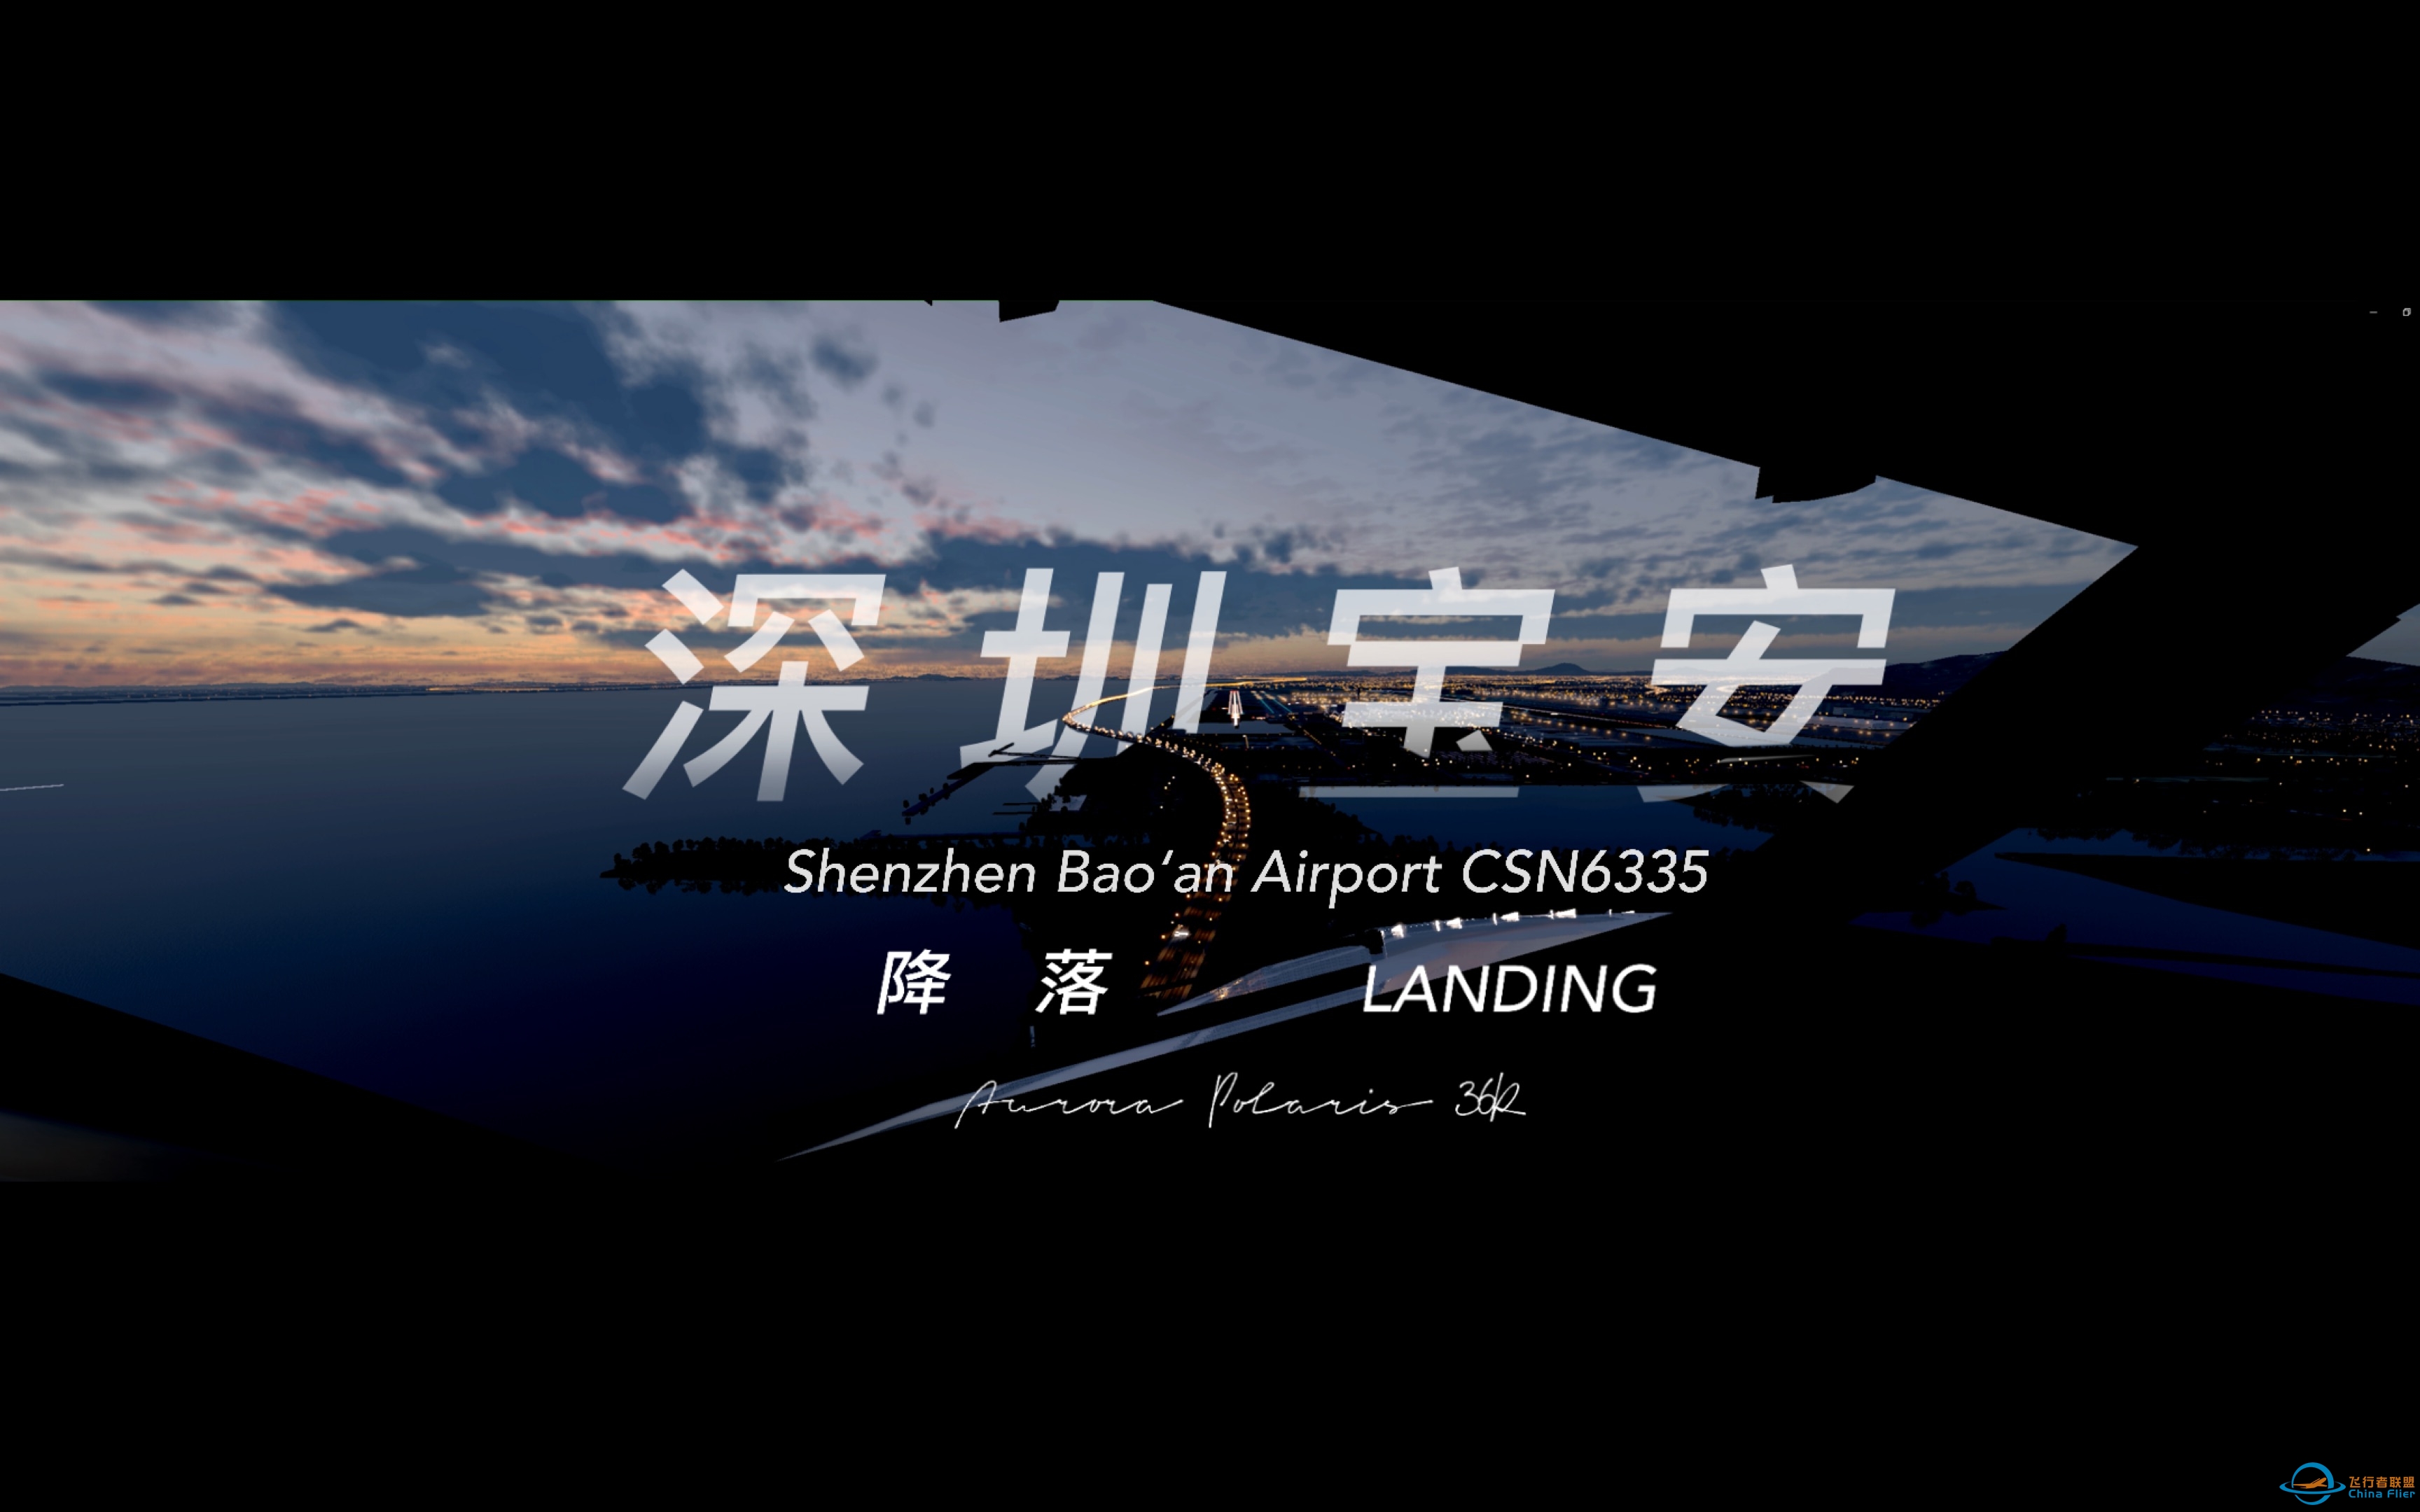 [XPlane12] 中国南方航空737降落于深圳宝安国际机场-7942 